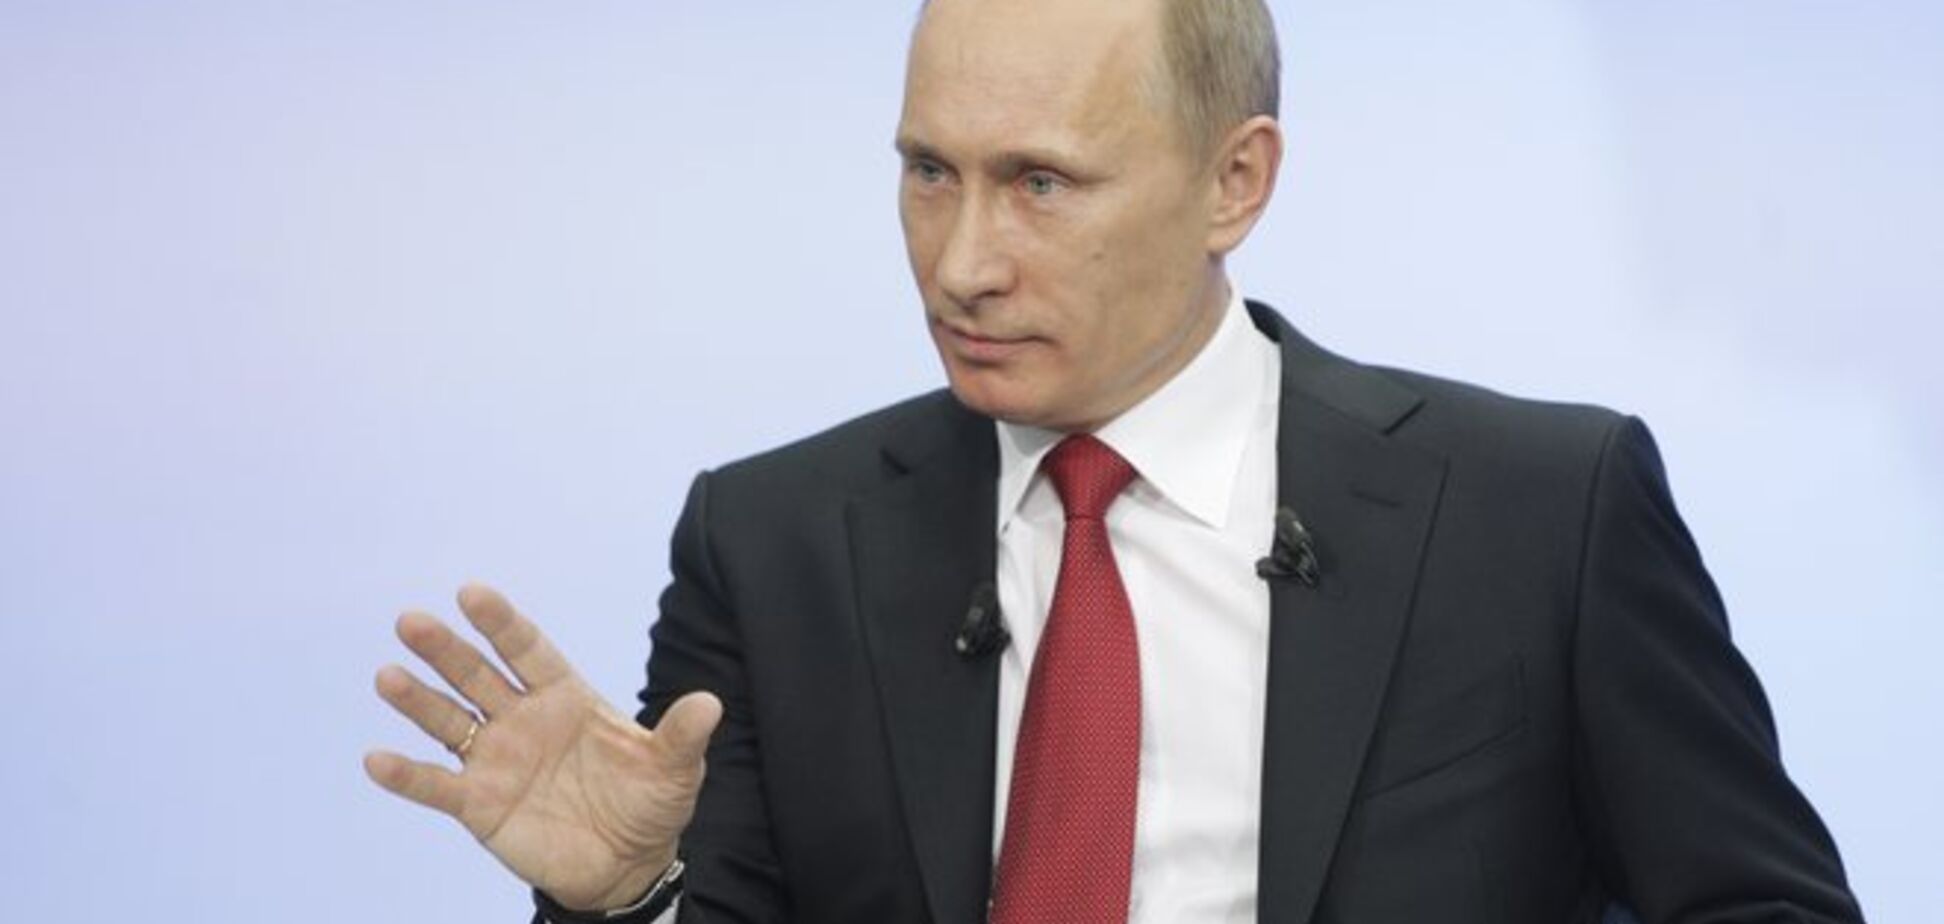 Independent назвала пять проблем, которые волнуют Путина больше, чем Украина